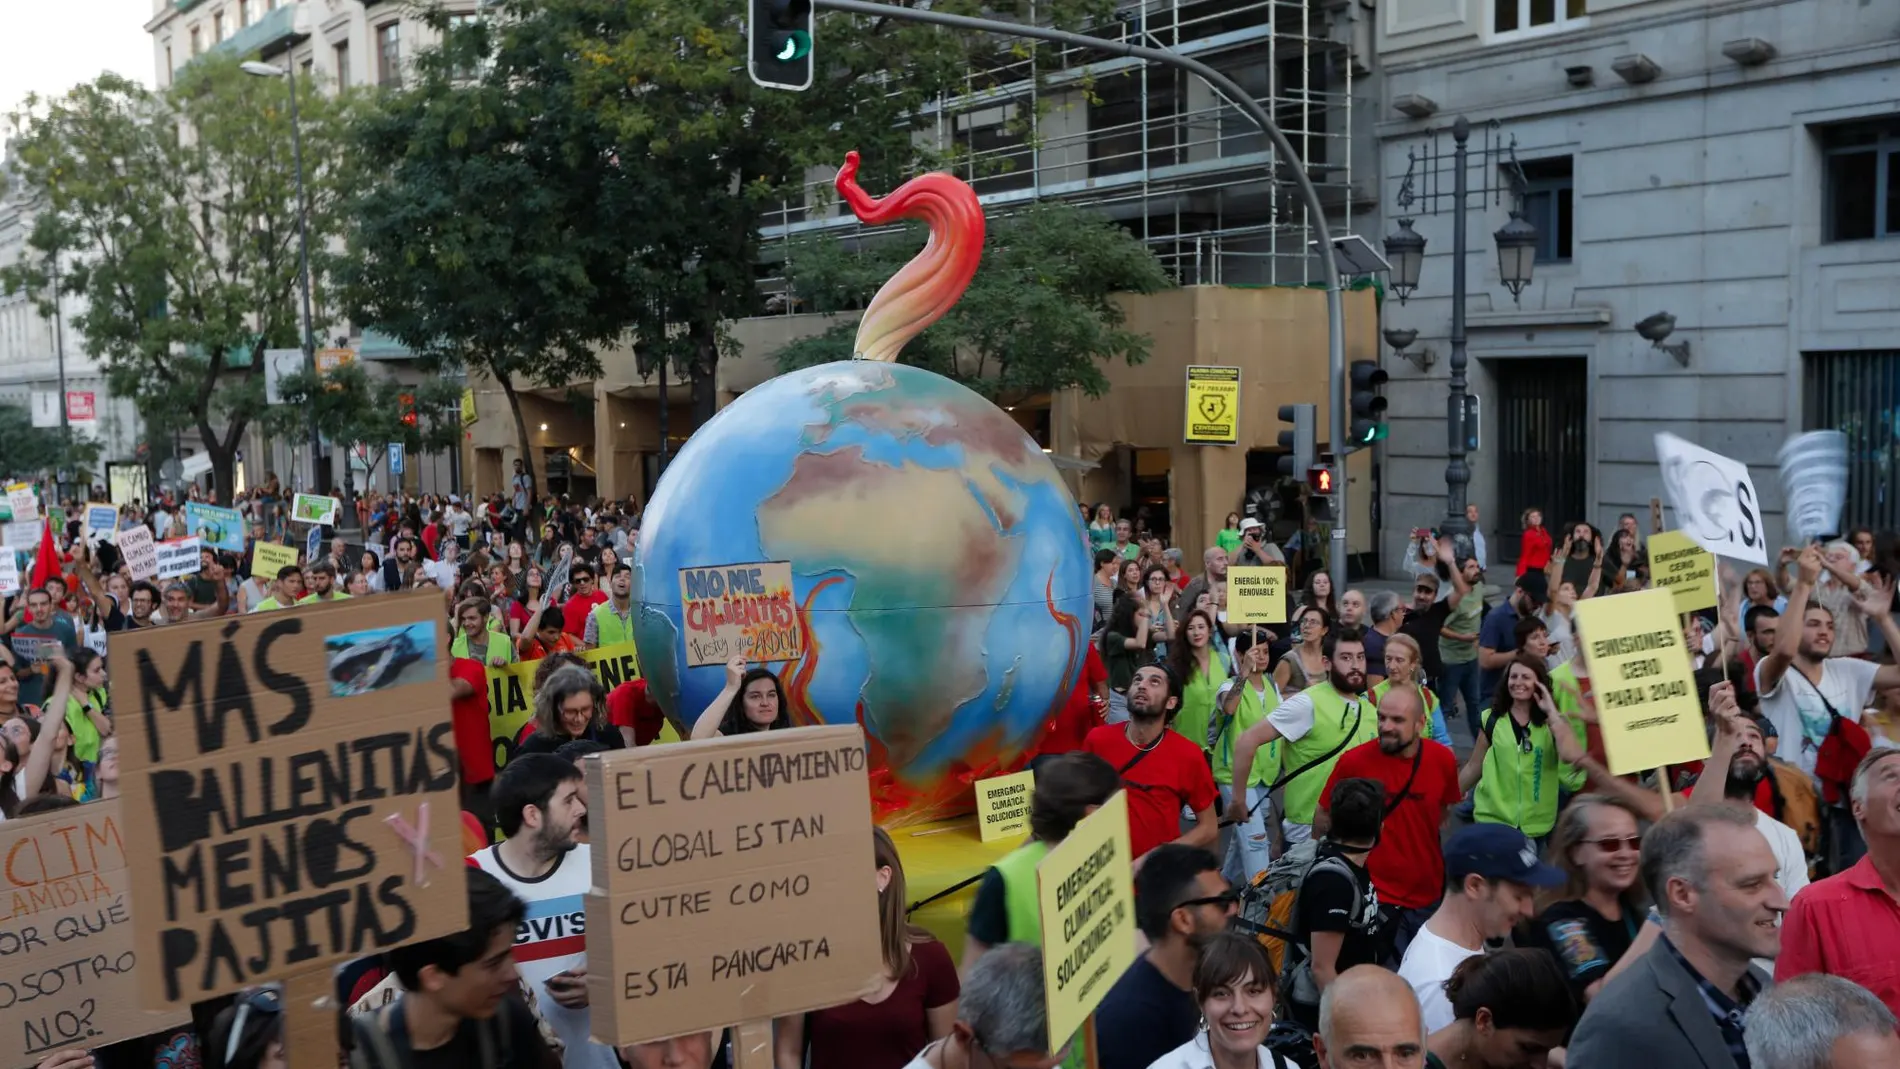 Juventud por el Clima, Alianza por el Clima, Rebelión por el Clima y Alianza por la Emergencia Climática realizaron la convocatoria de huelga en España, que contó con el respaldo de más de 300 organizaciones